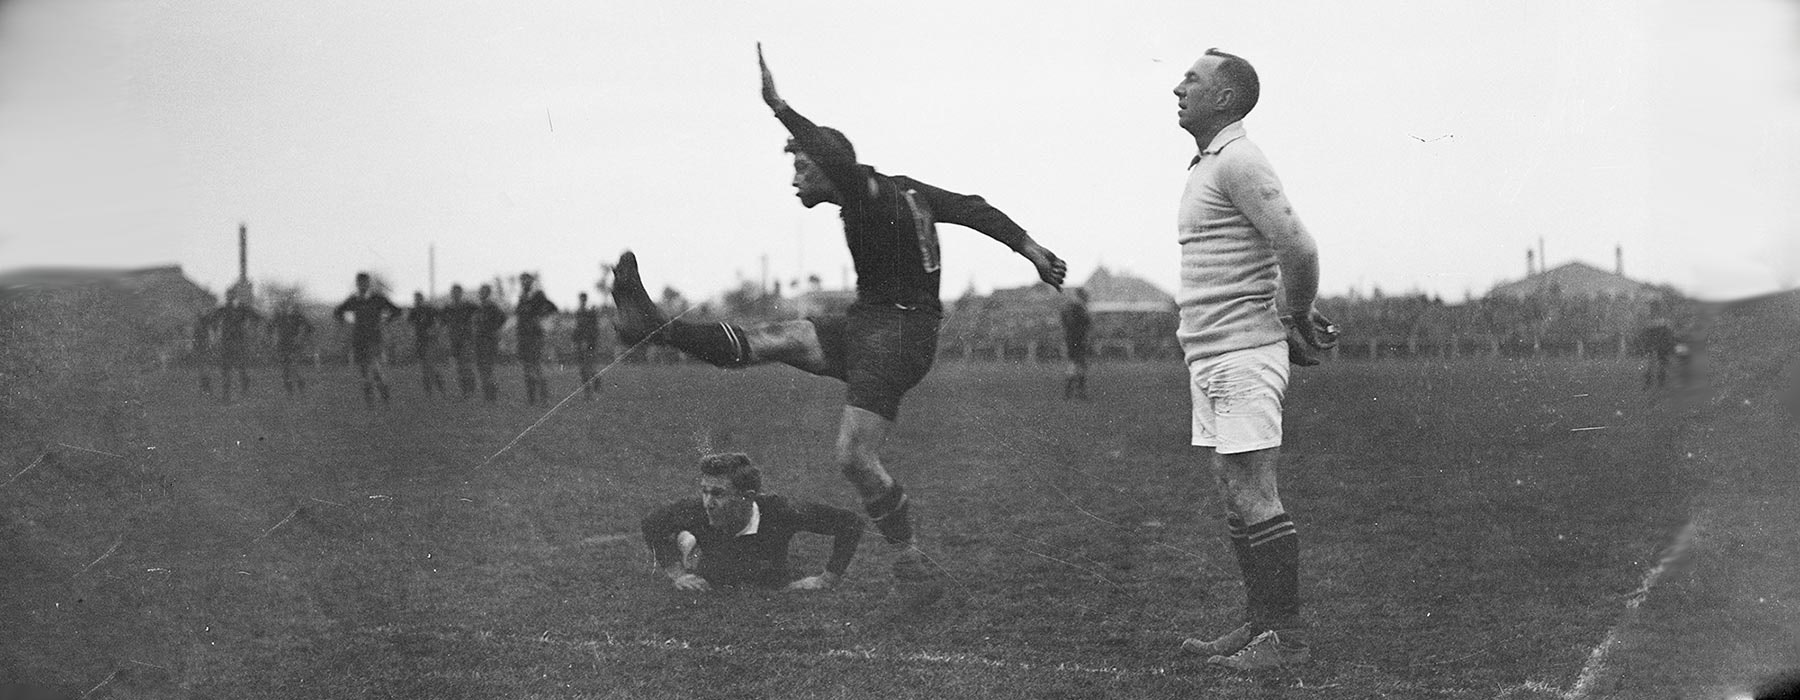 Man kicking ball